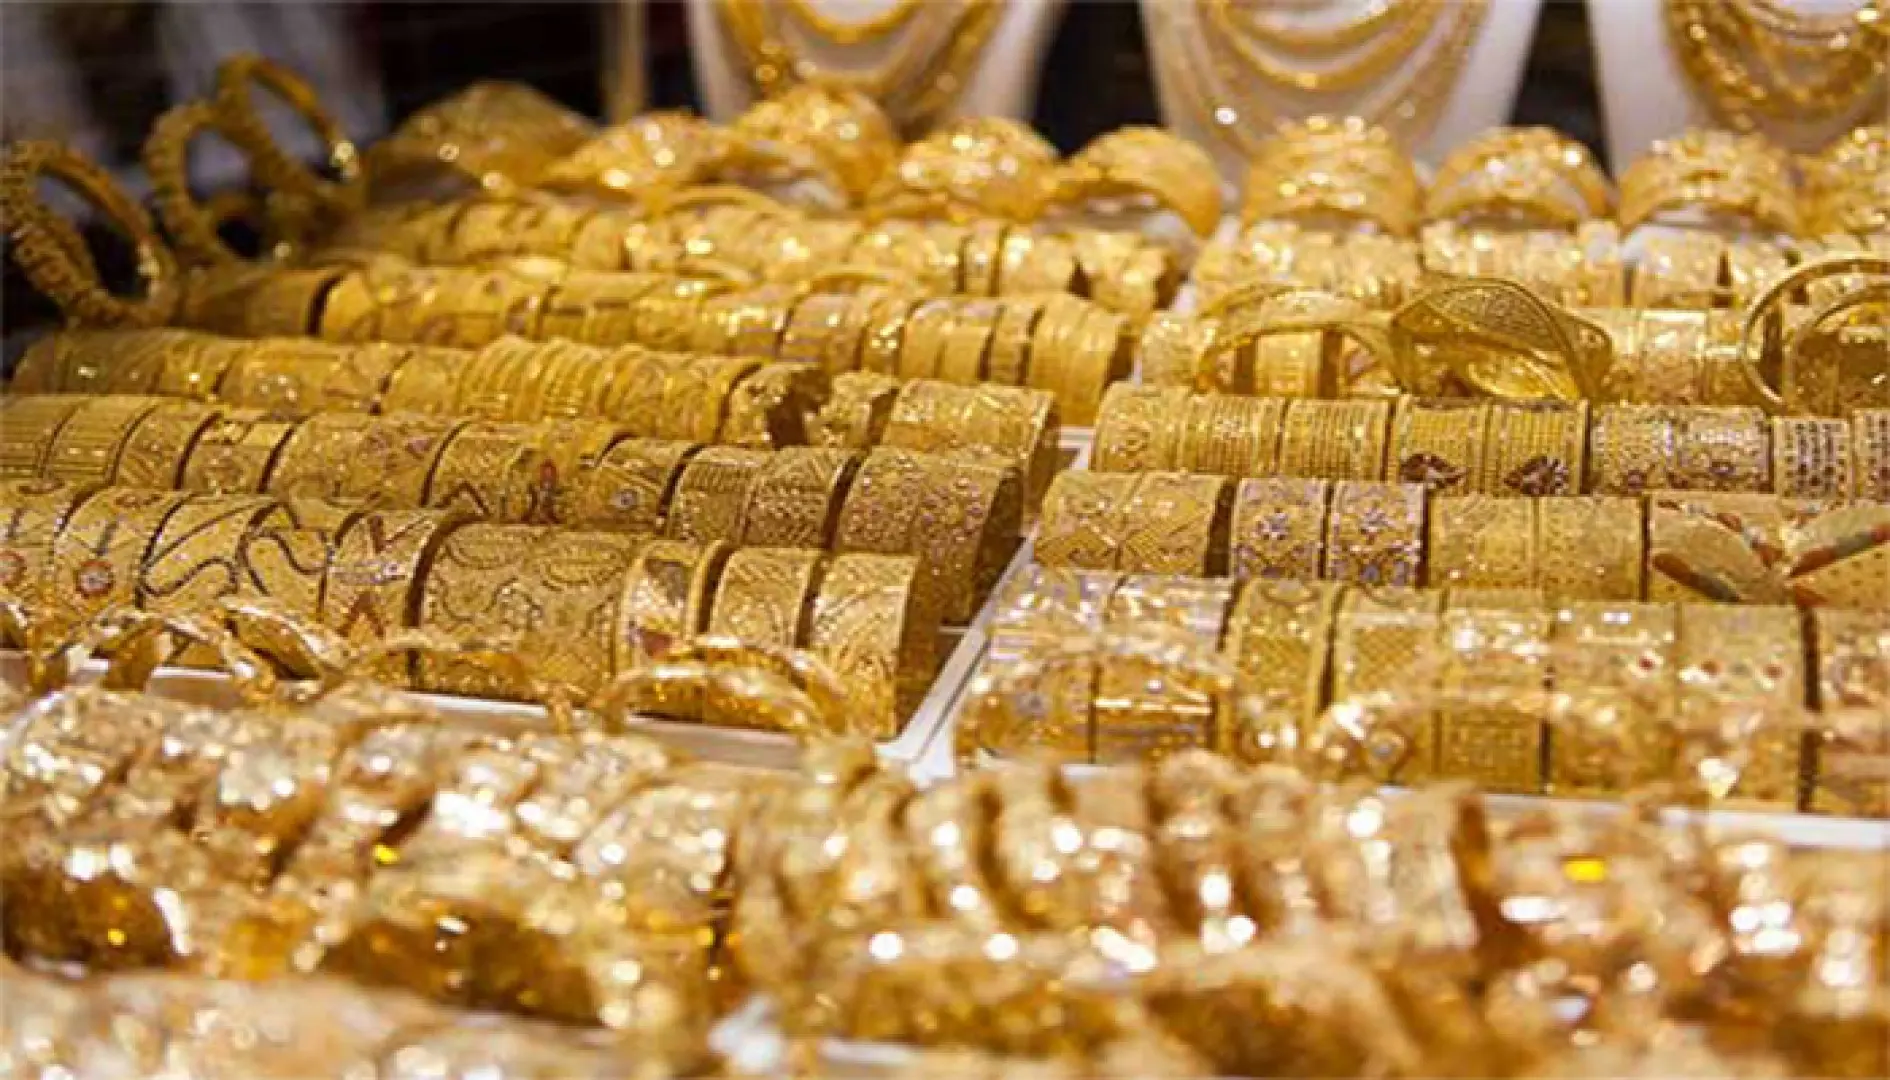  بازار طلا دوباره شیب صعودی را پیش گرفت | آخرین قیمت ها از بازار طلا ۲۱ اردیبهشت